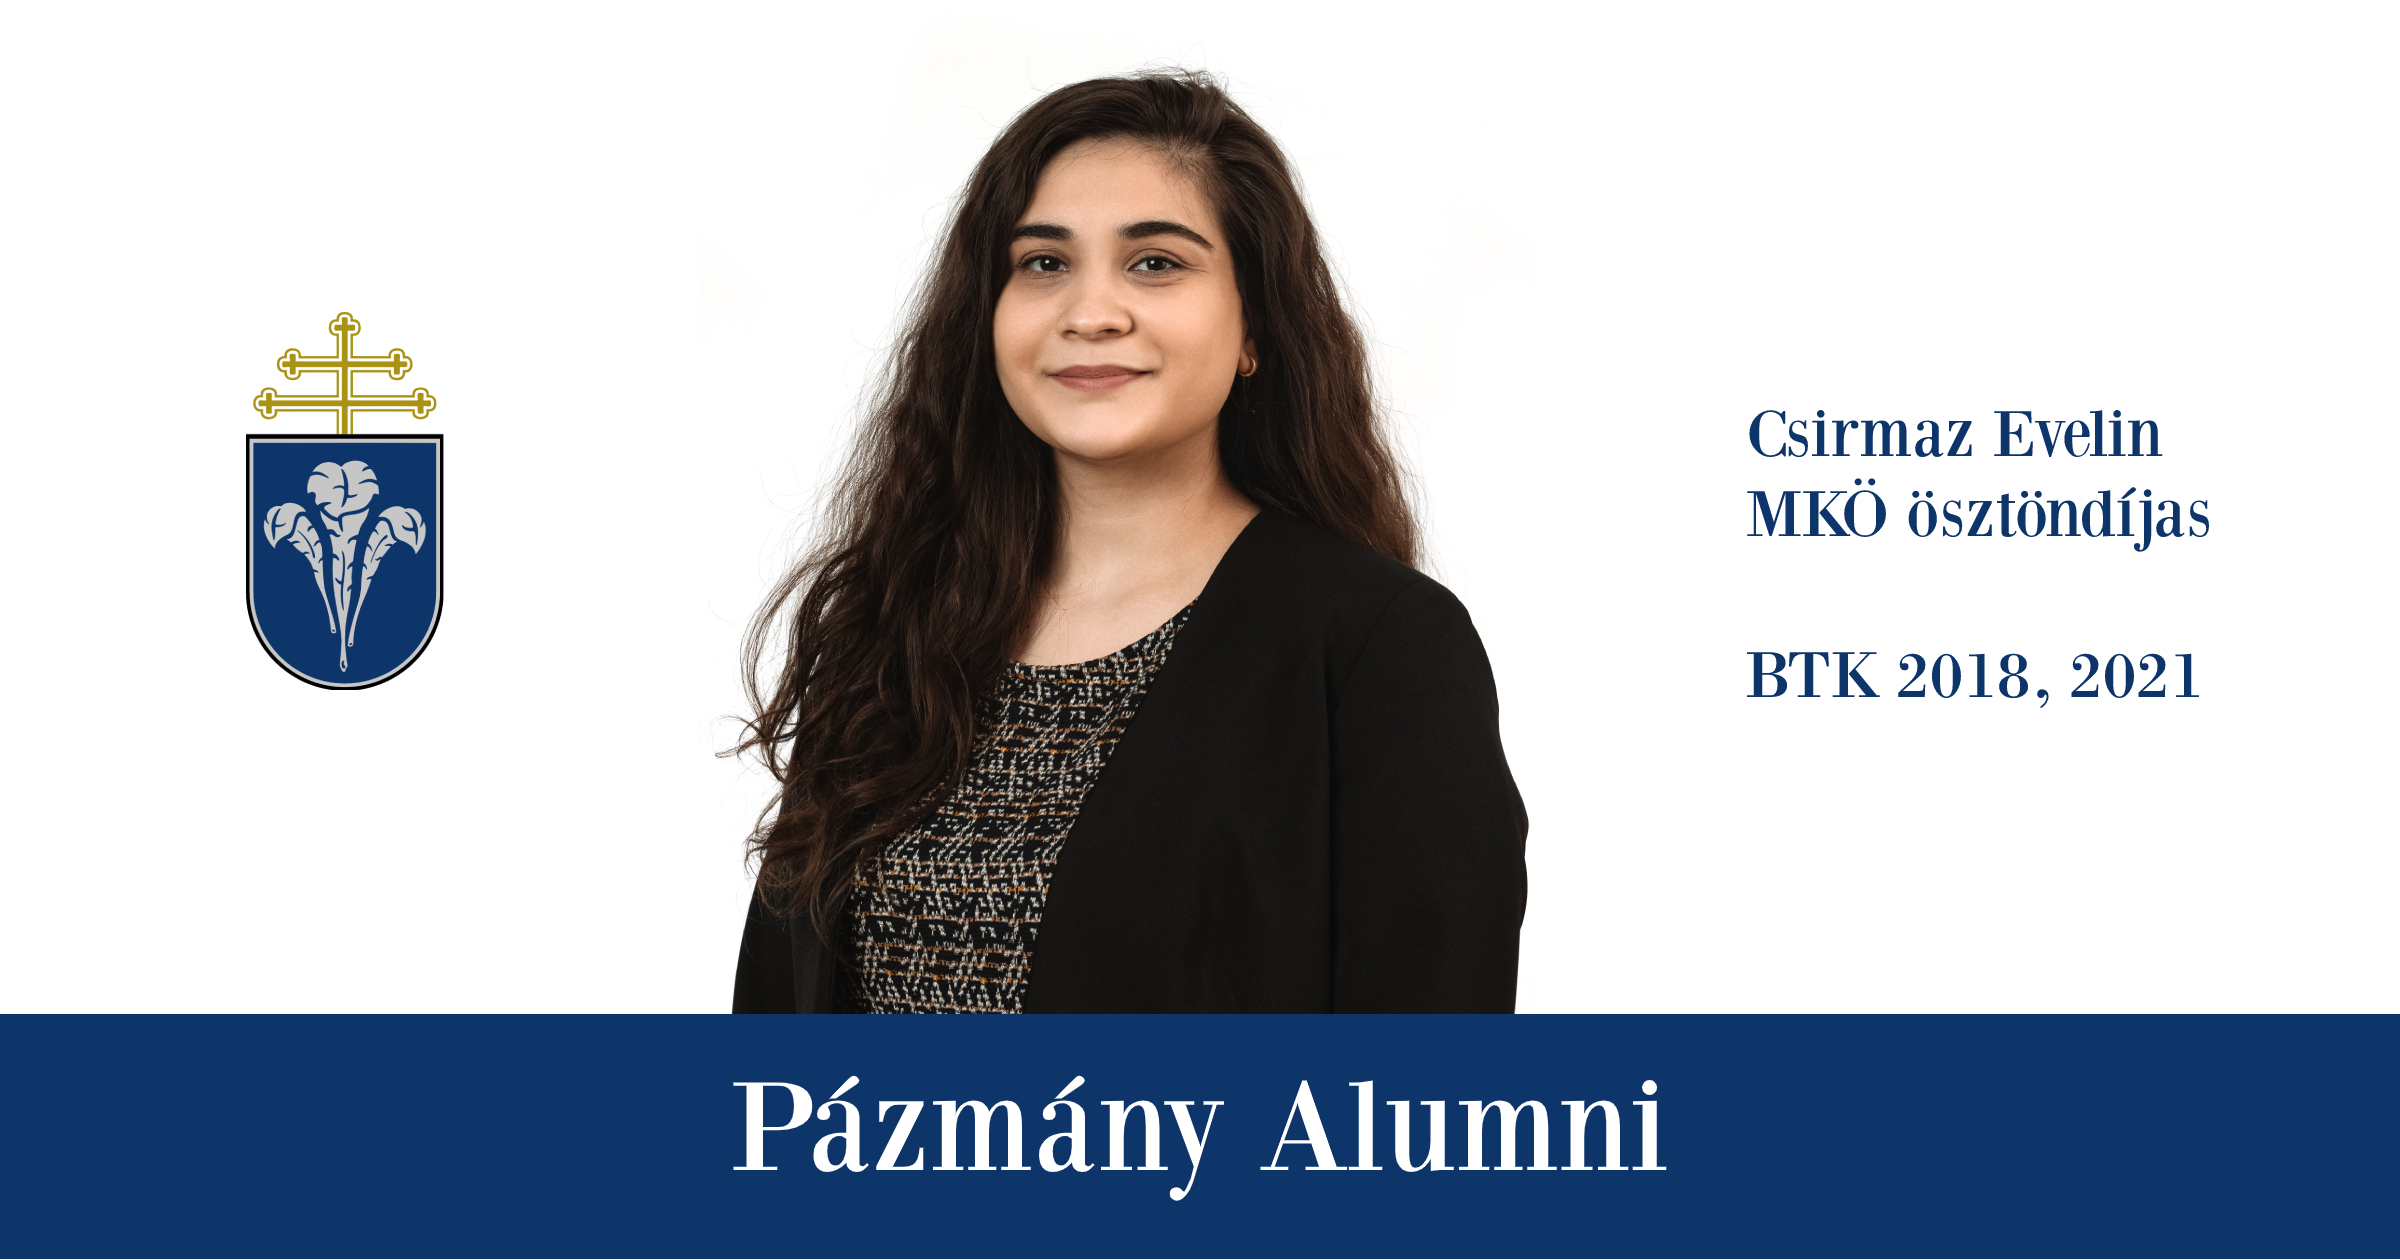 Pázmány Alumni: interjú Csirmaz Evelinnel, a BTK egykori hallgatójával